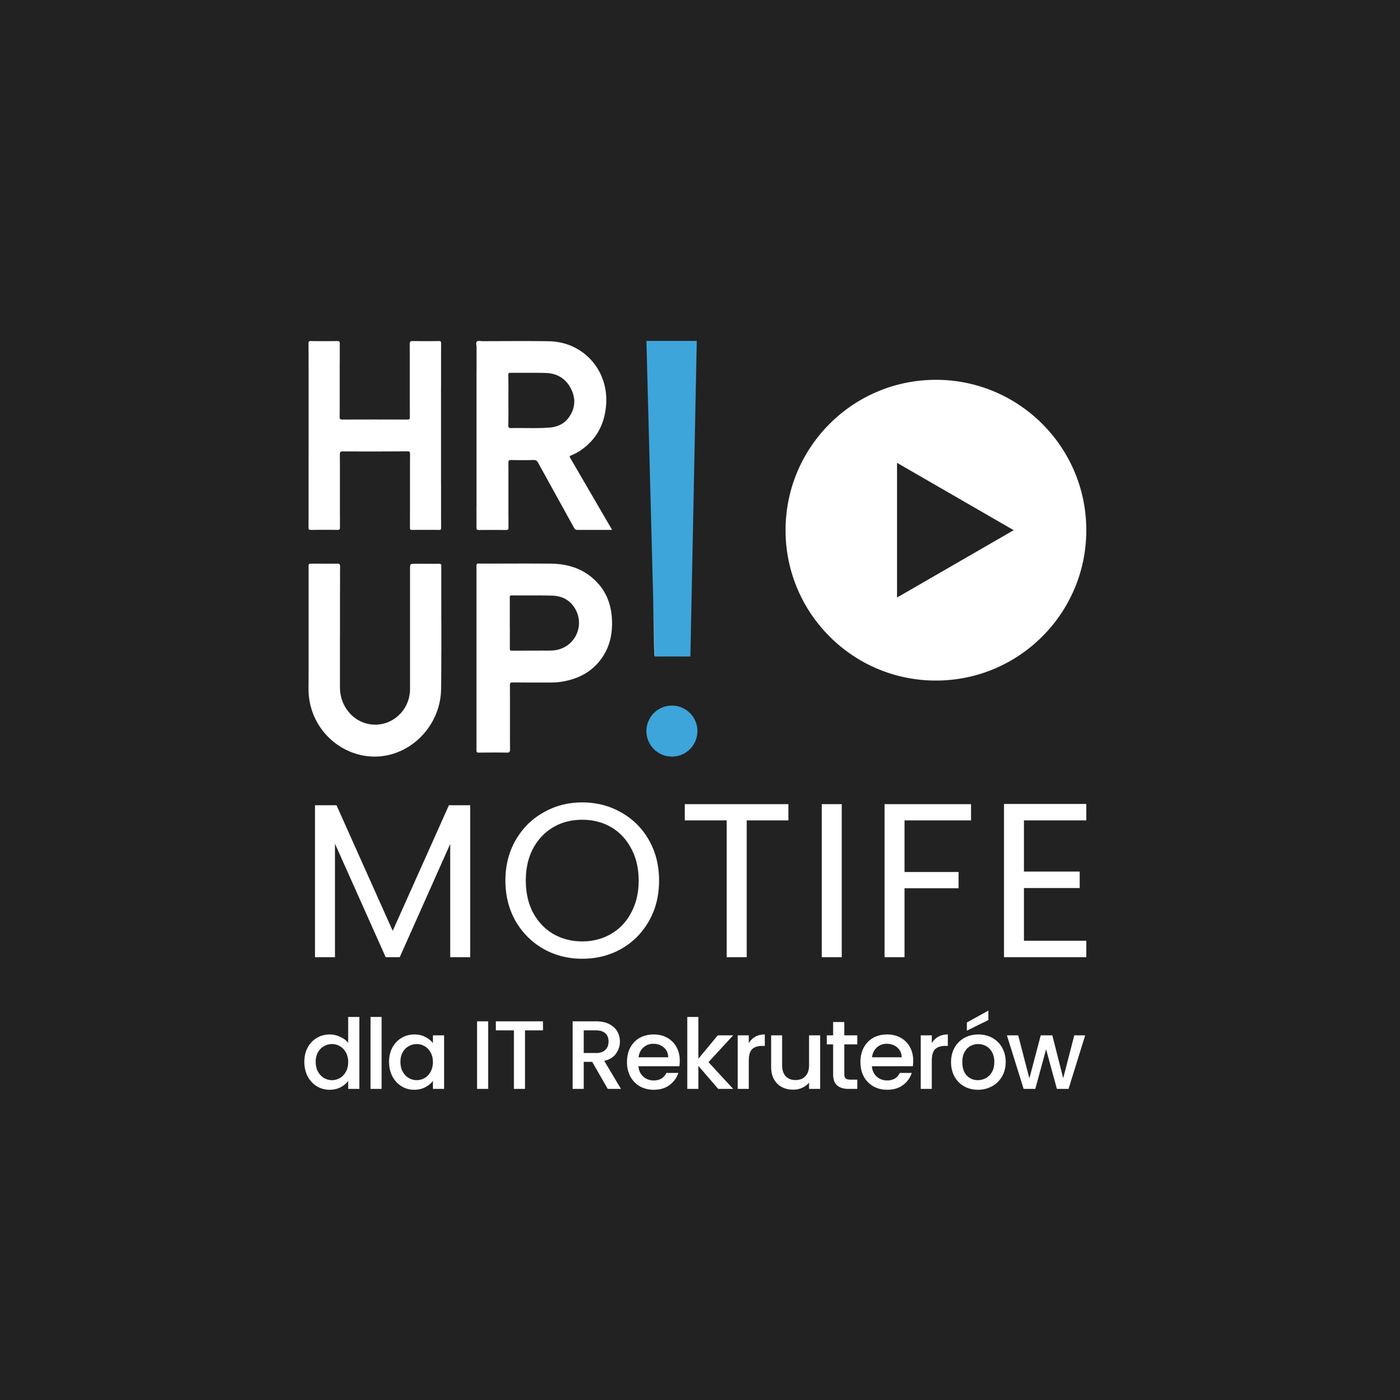 # 61 HR-UP! & MOTIFE dla IT Rekruterów: rozmowa z Krzyśkiem Kempińskim o rekrutacji IT okiem programisty cz.2